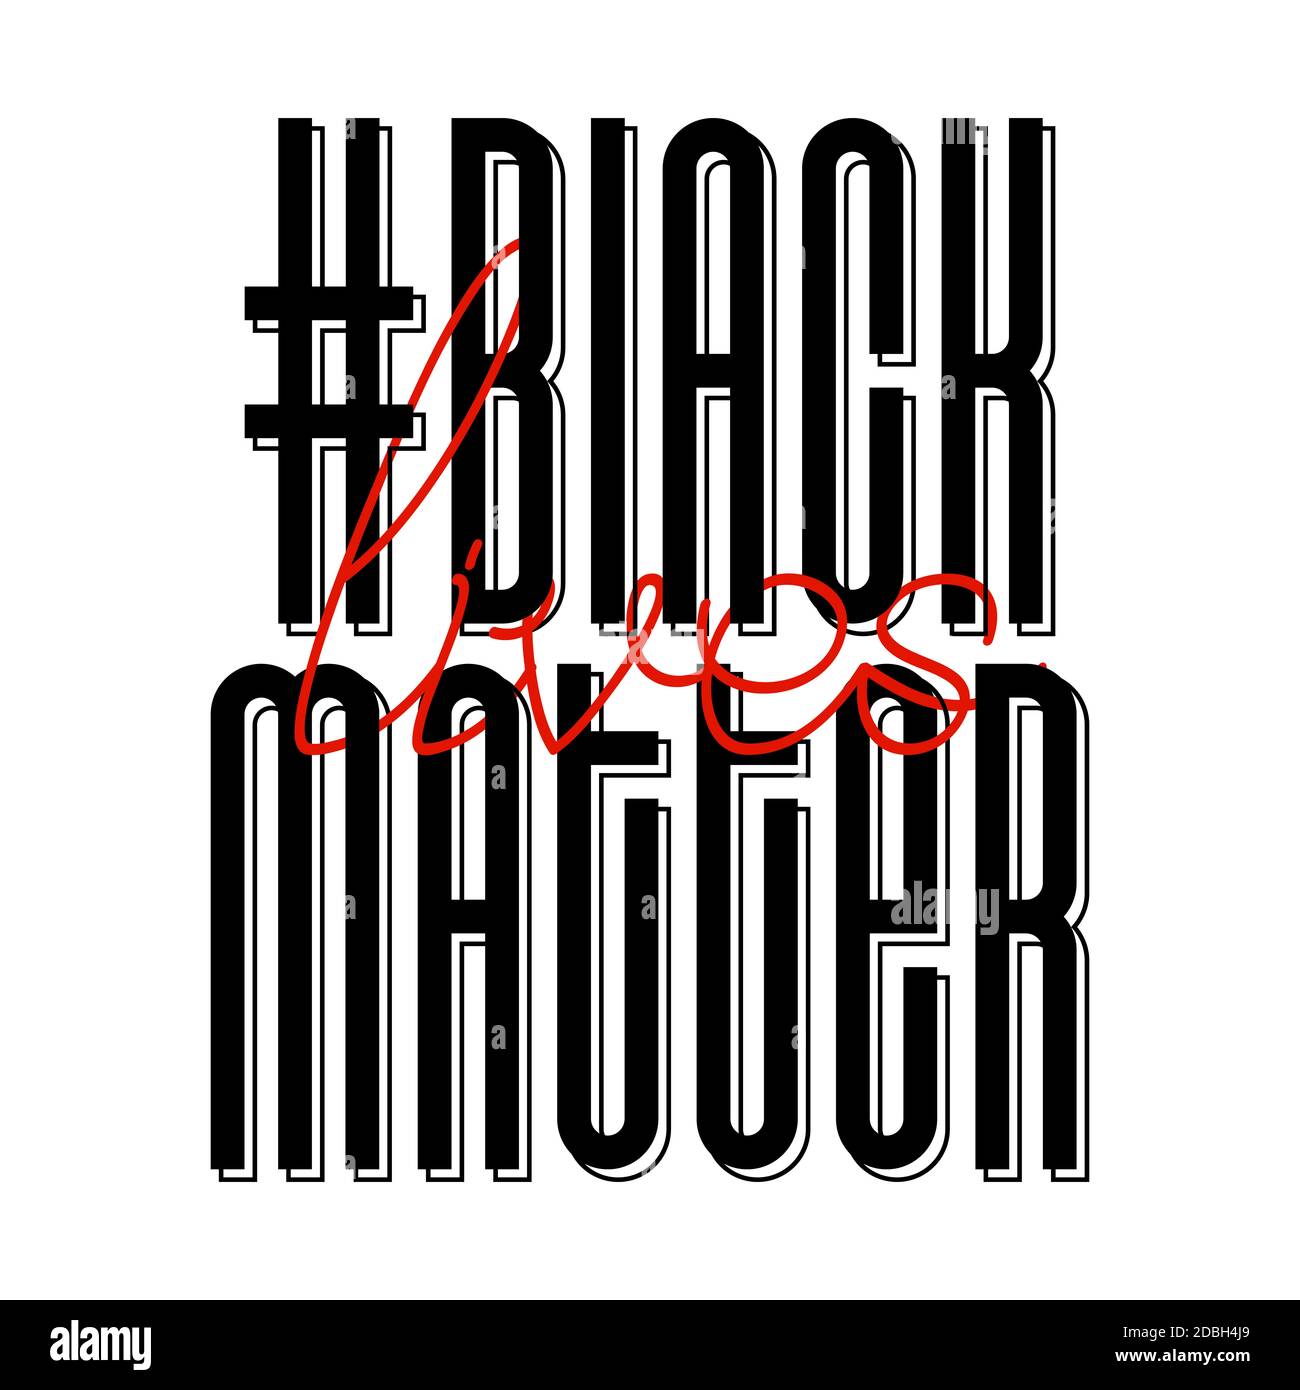 Las vidas negras importan. Banner de protesta sobre el derecho humano del pueblo negro en Estados Unidos. Ilustración vectorial. Foto de stock